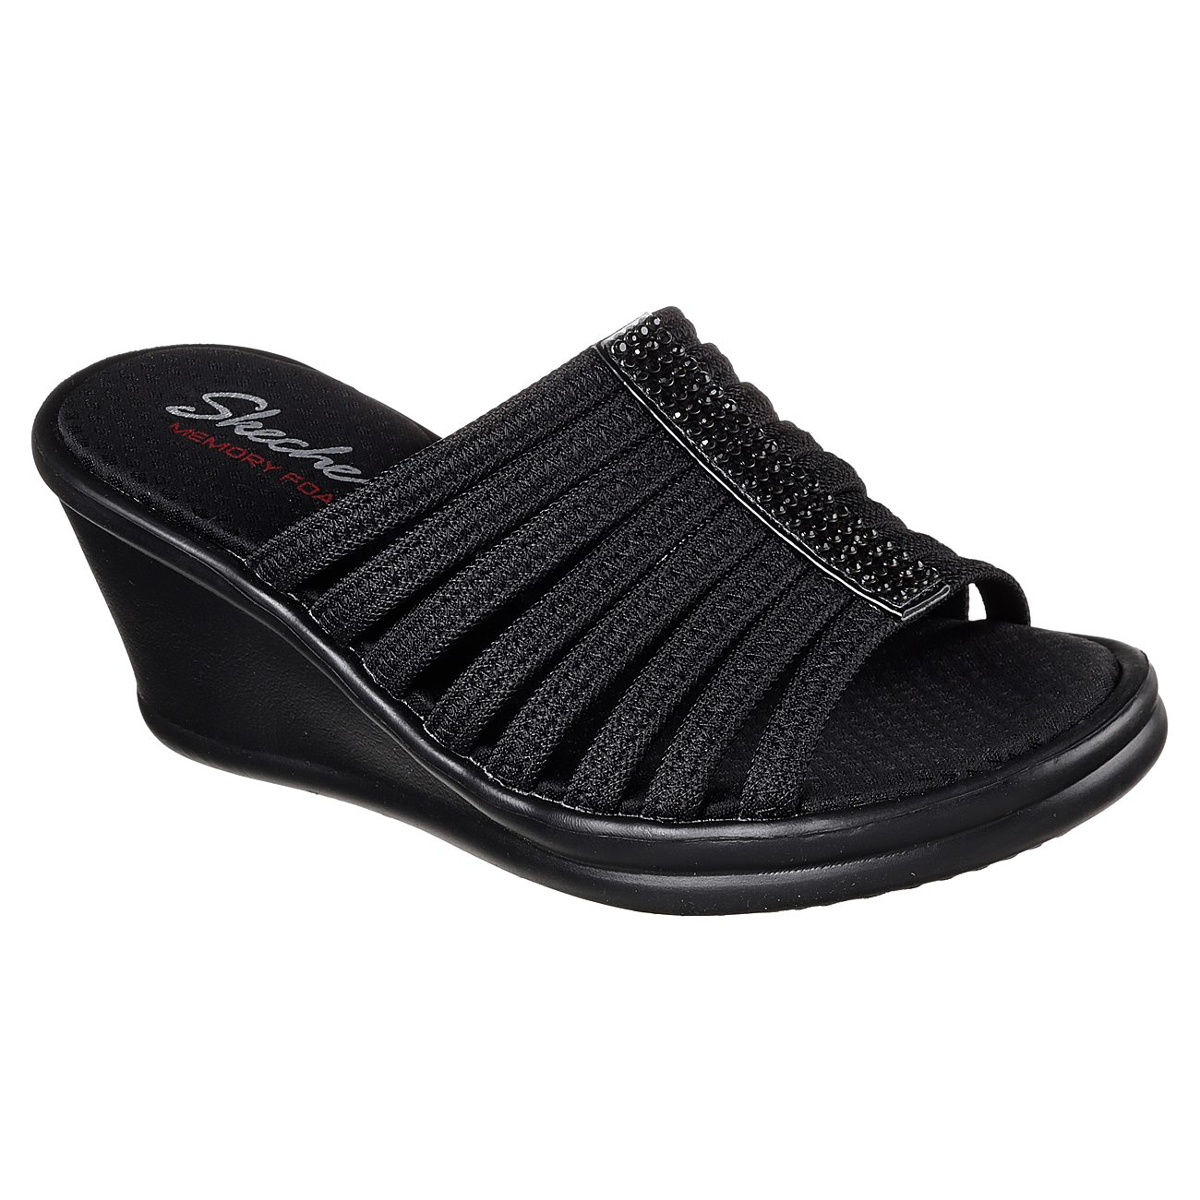 Skechers Women's Rumblers -  Hotshot Sandals - Black, 7